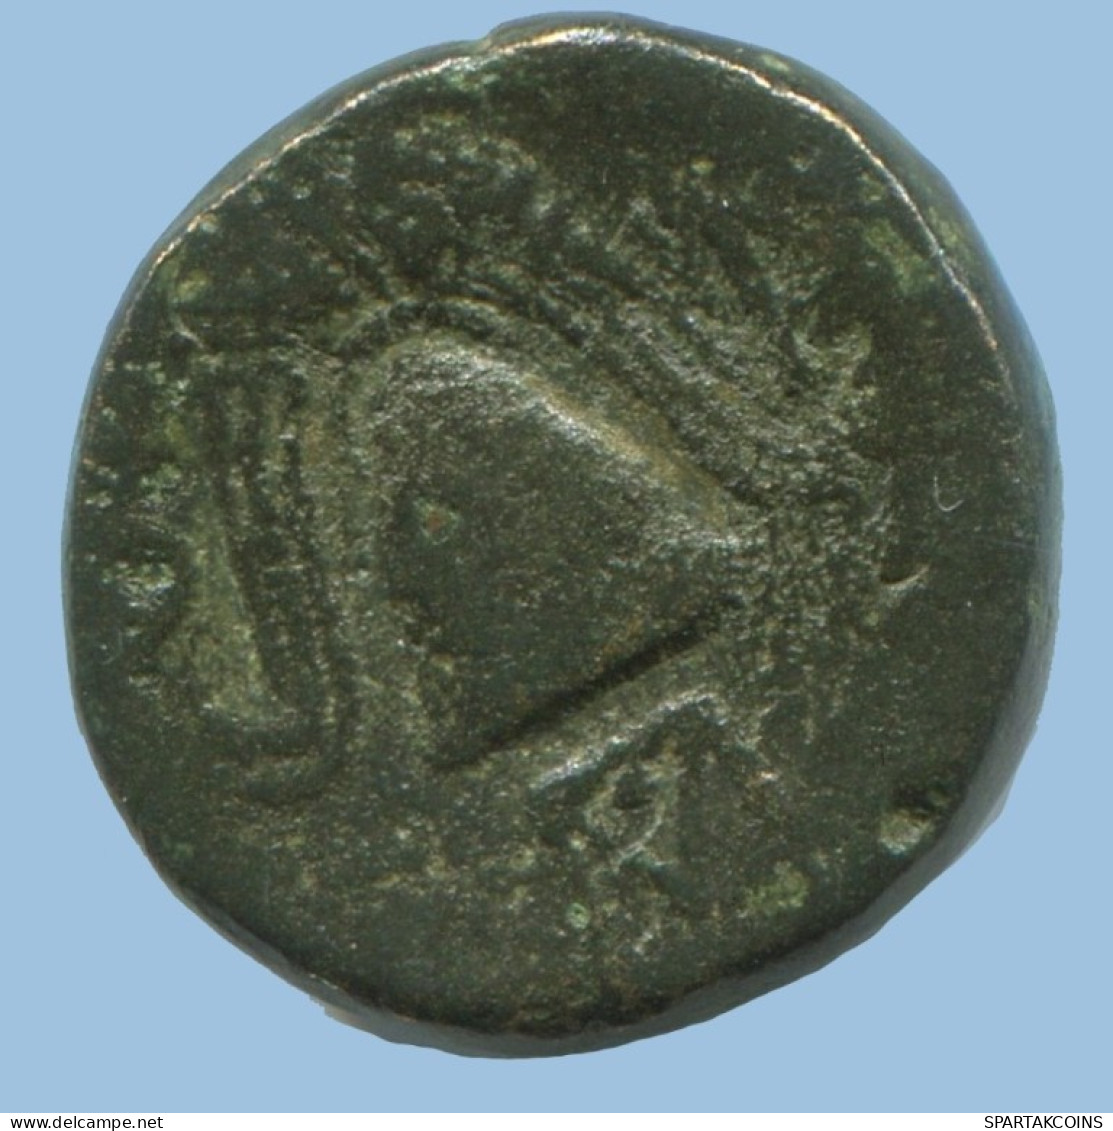 MACEDON ALEXANDER THE GREAT SHIELD HELMET GRIECHISCHE Münze 4.6g/15mm GRIECHISCHE Münze #AG092.12.D.A - Greek